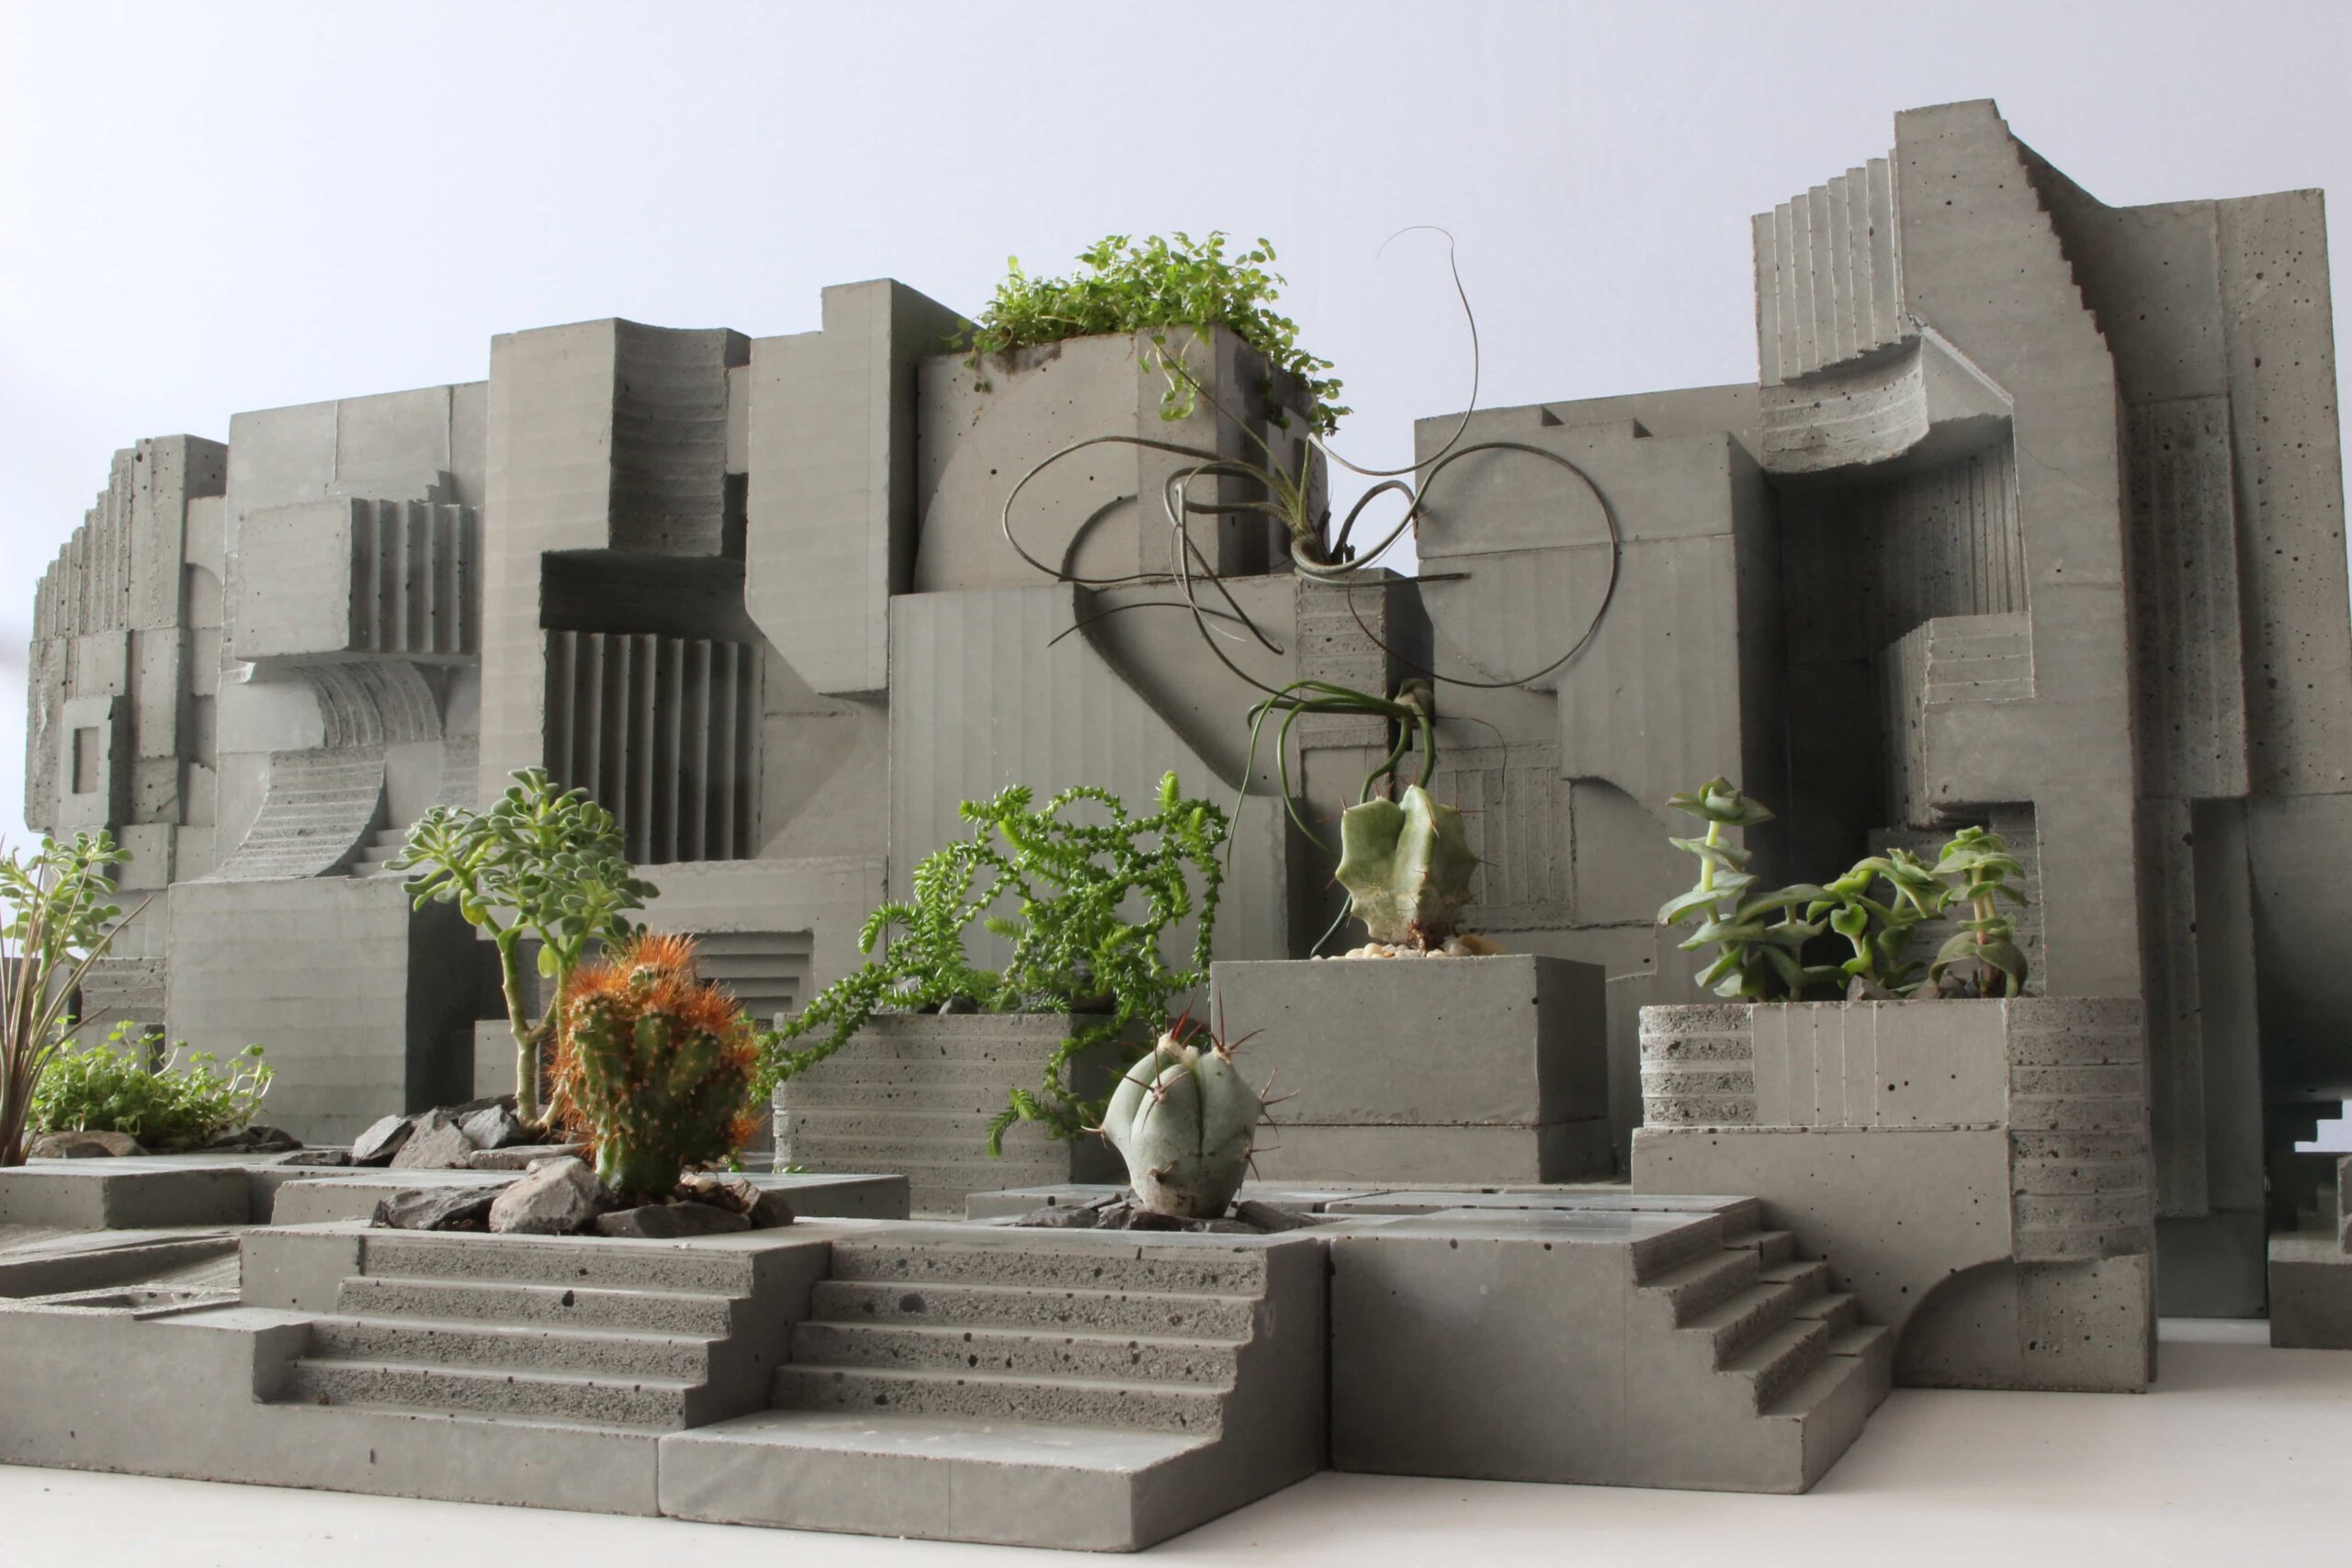 Concrete Planter with Miniature Plants